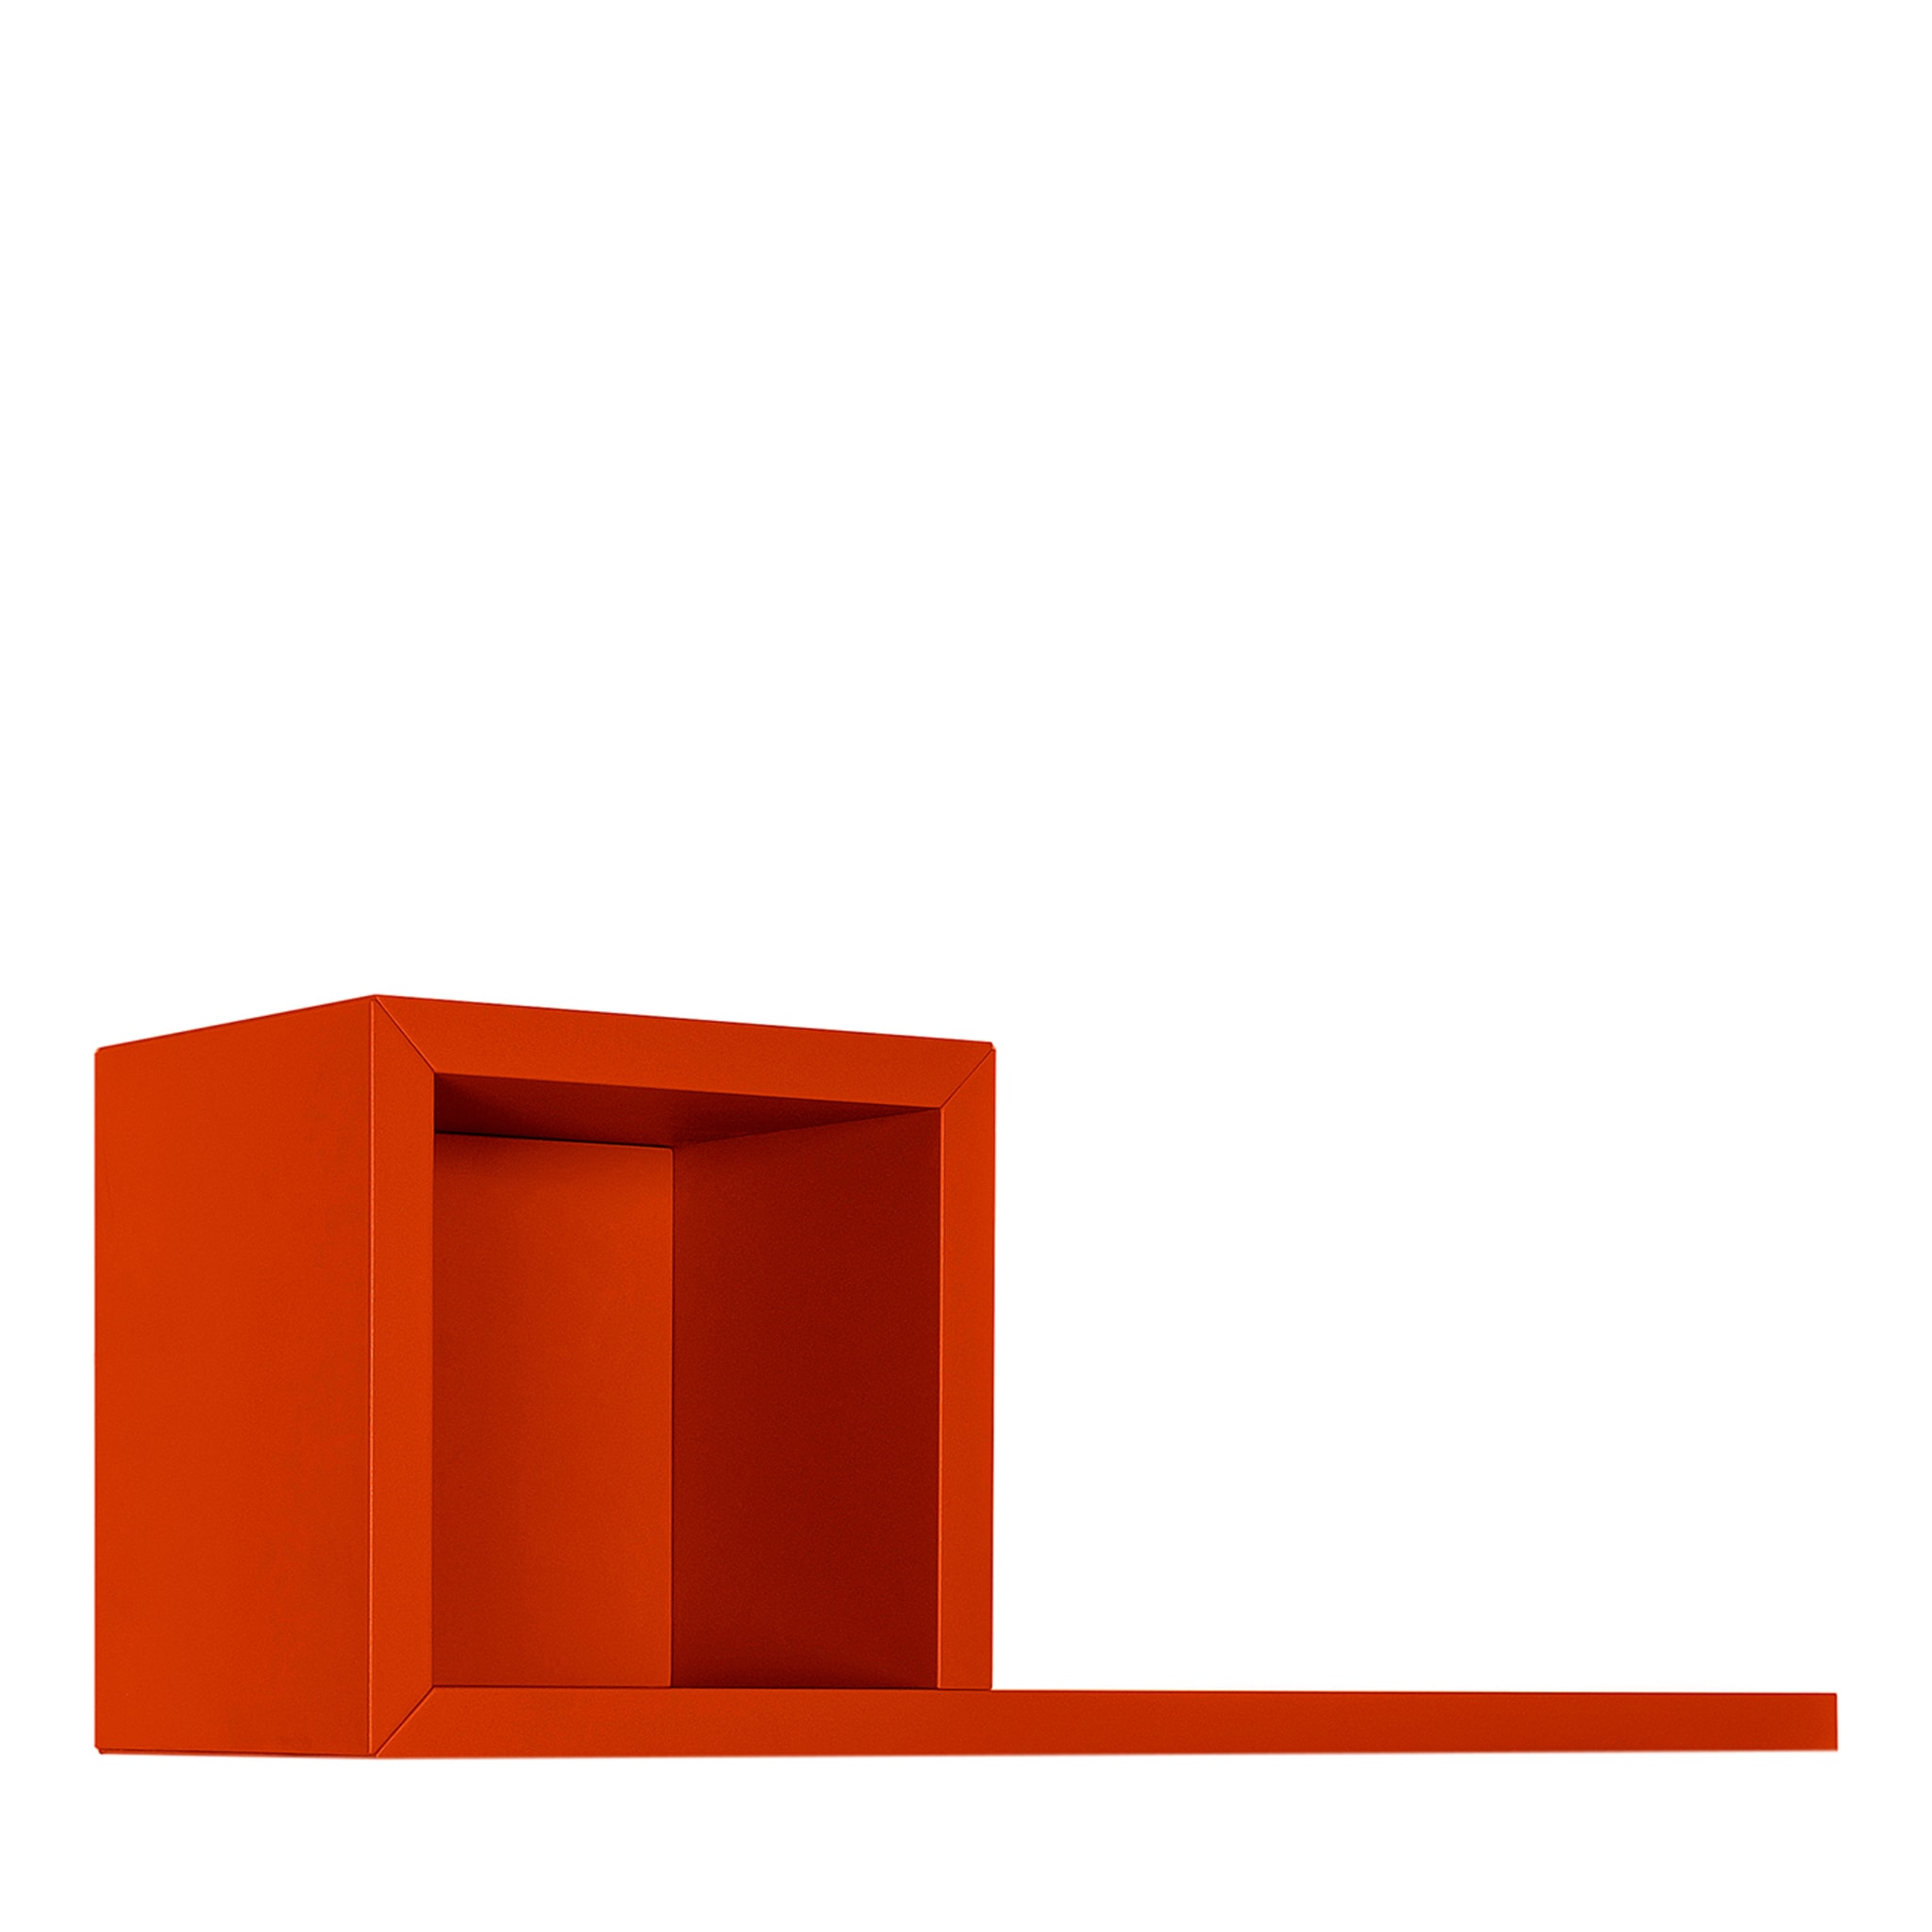 AL.96 Orange Shelf by Alan Cornolti - Main view